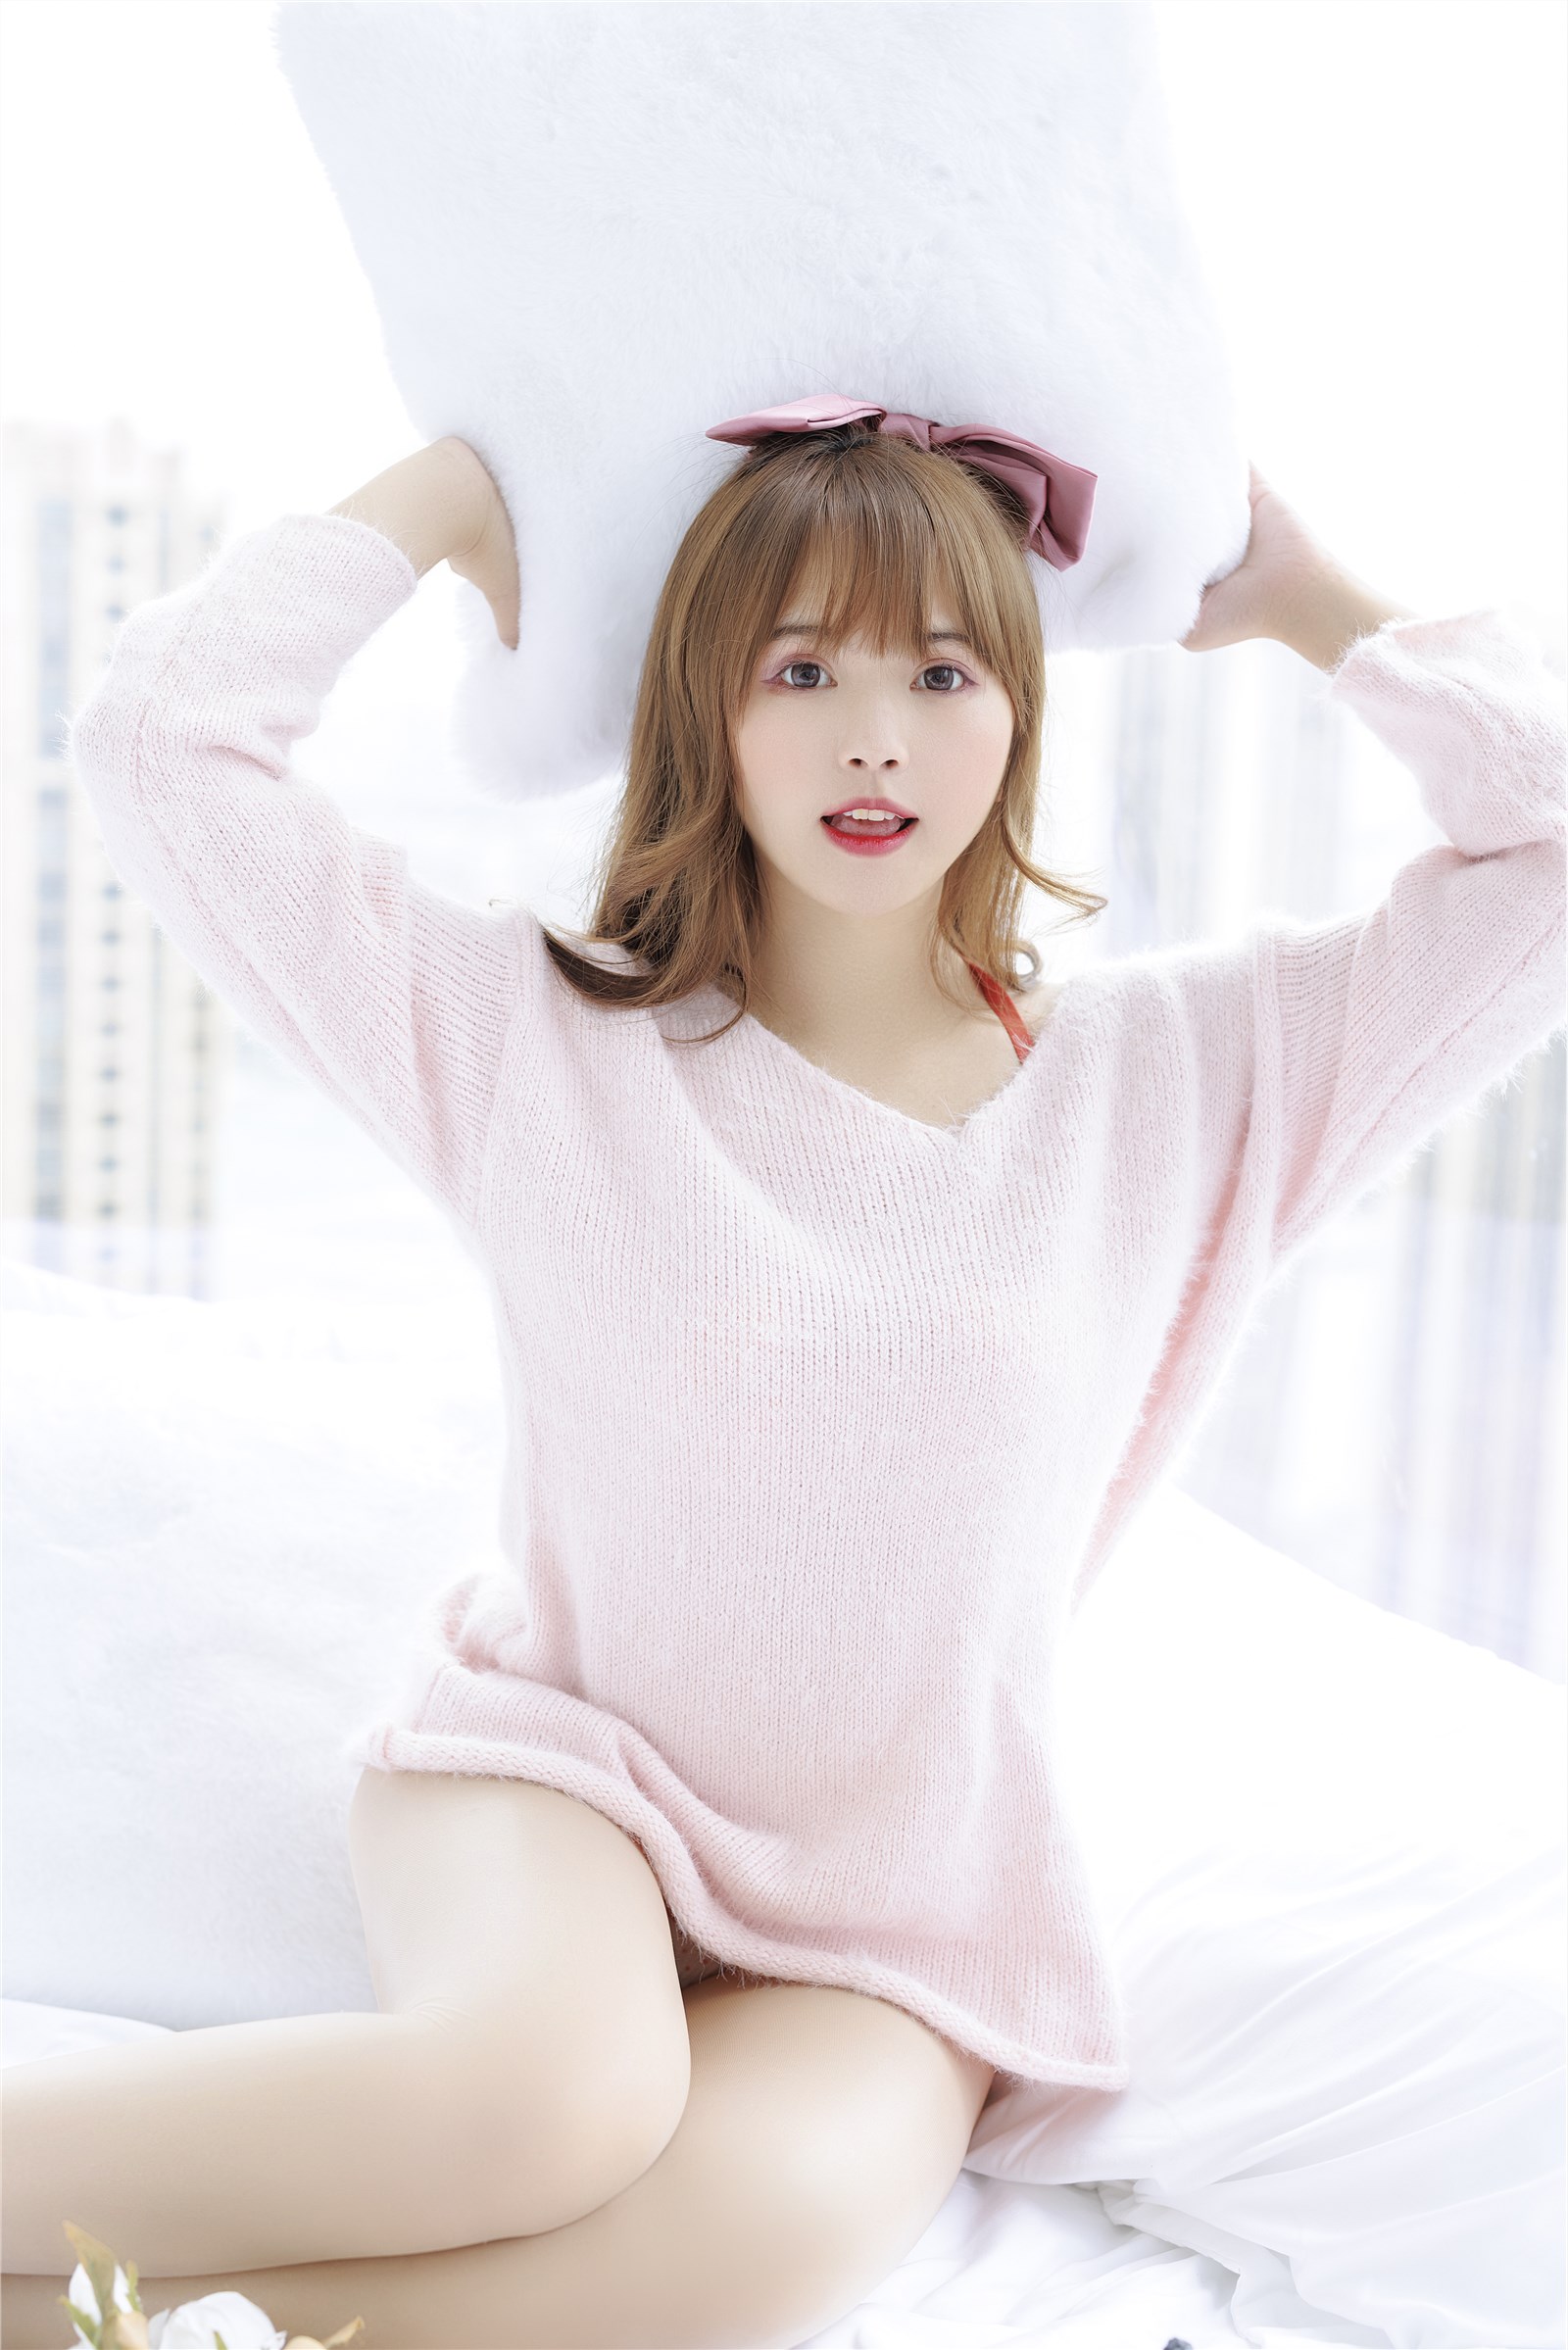 002. Zhang Siyun Nice - Internal purchase of watermark free pink sweater(21)